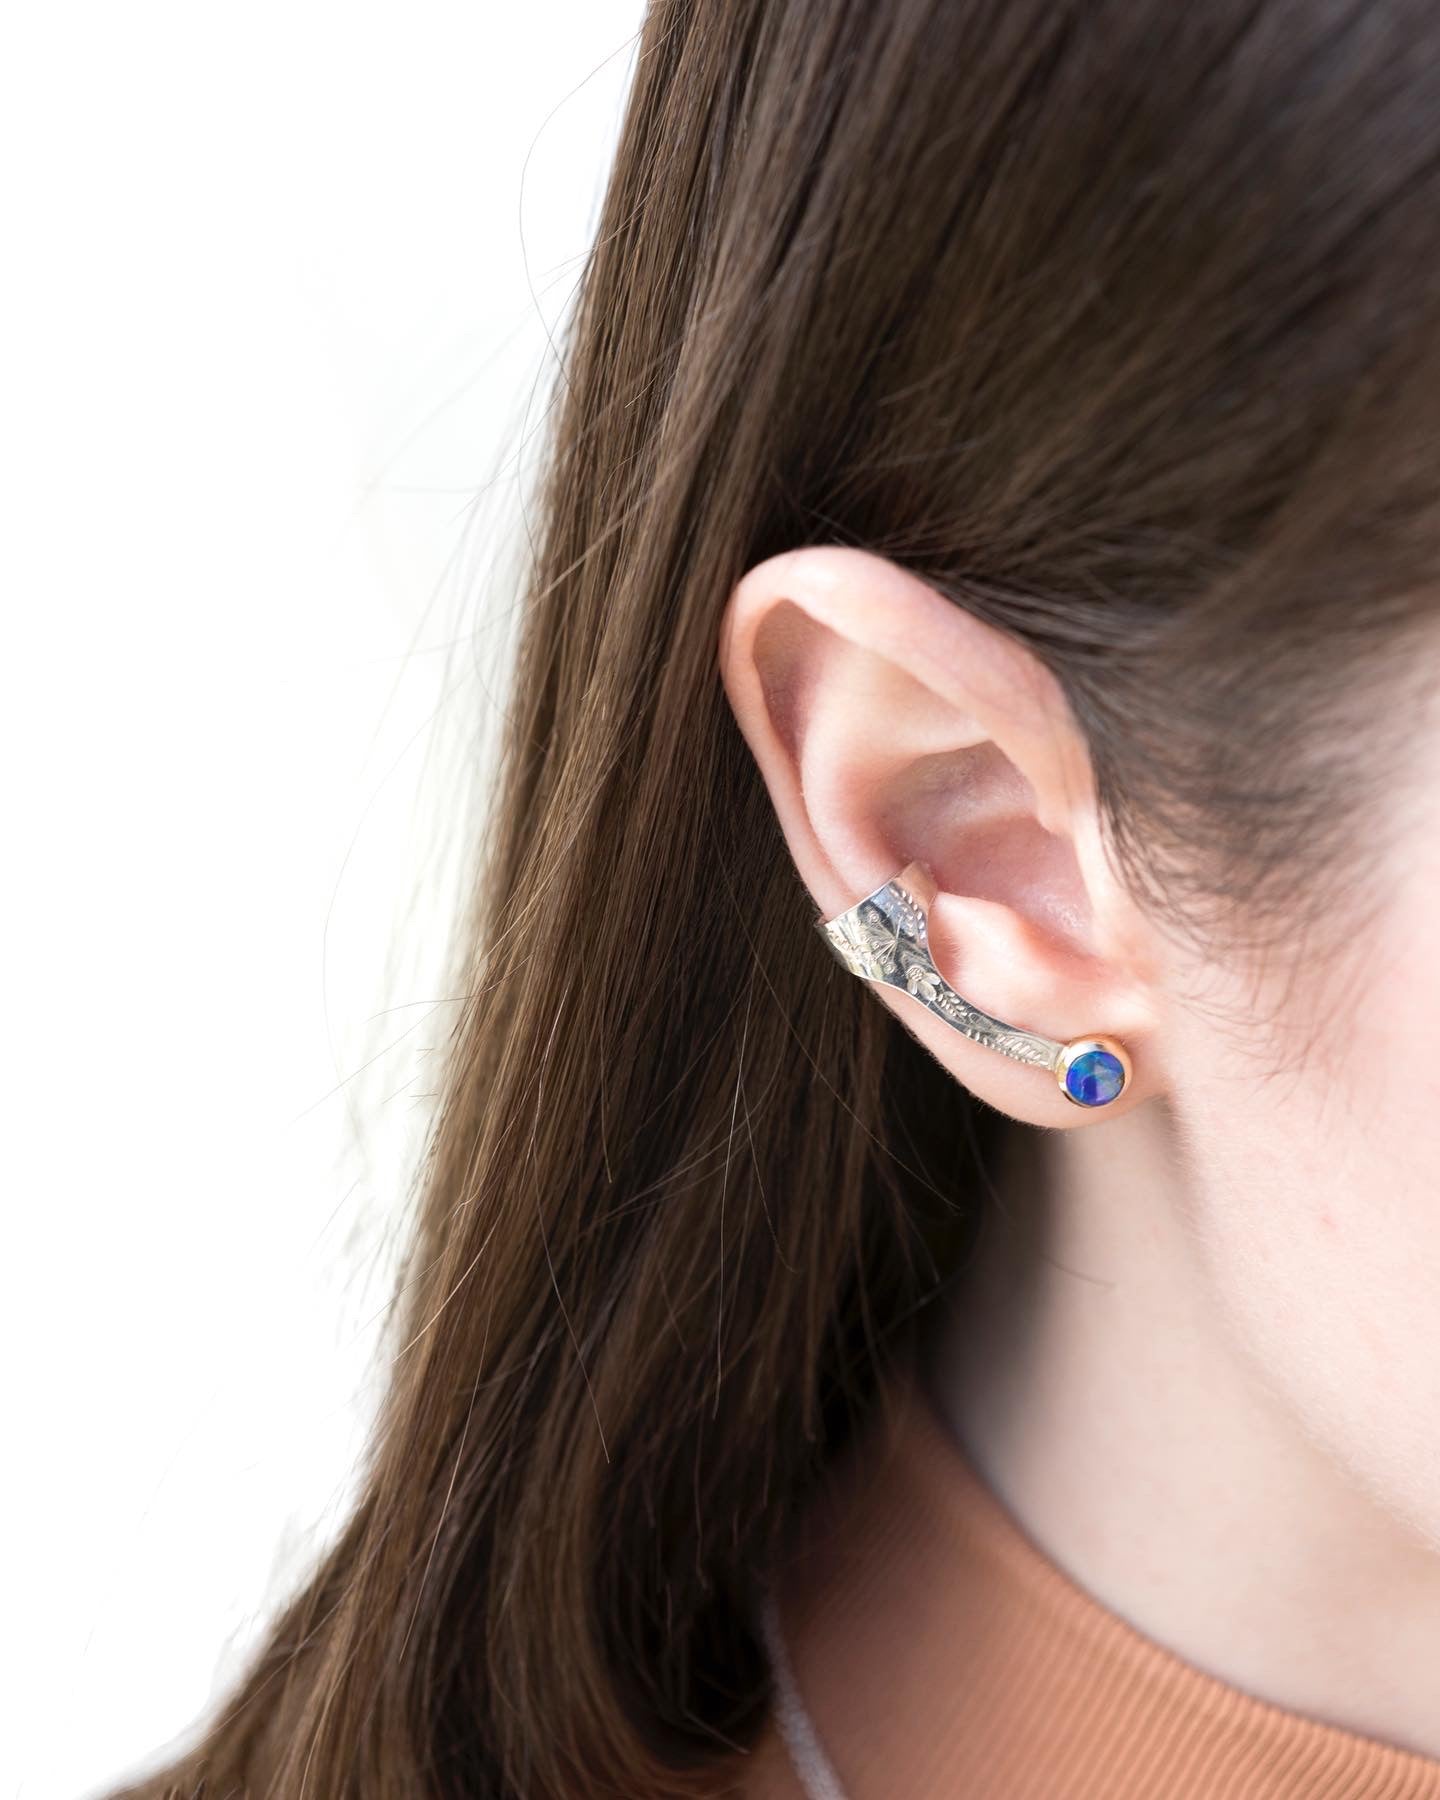 Shield earrings